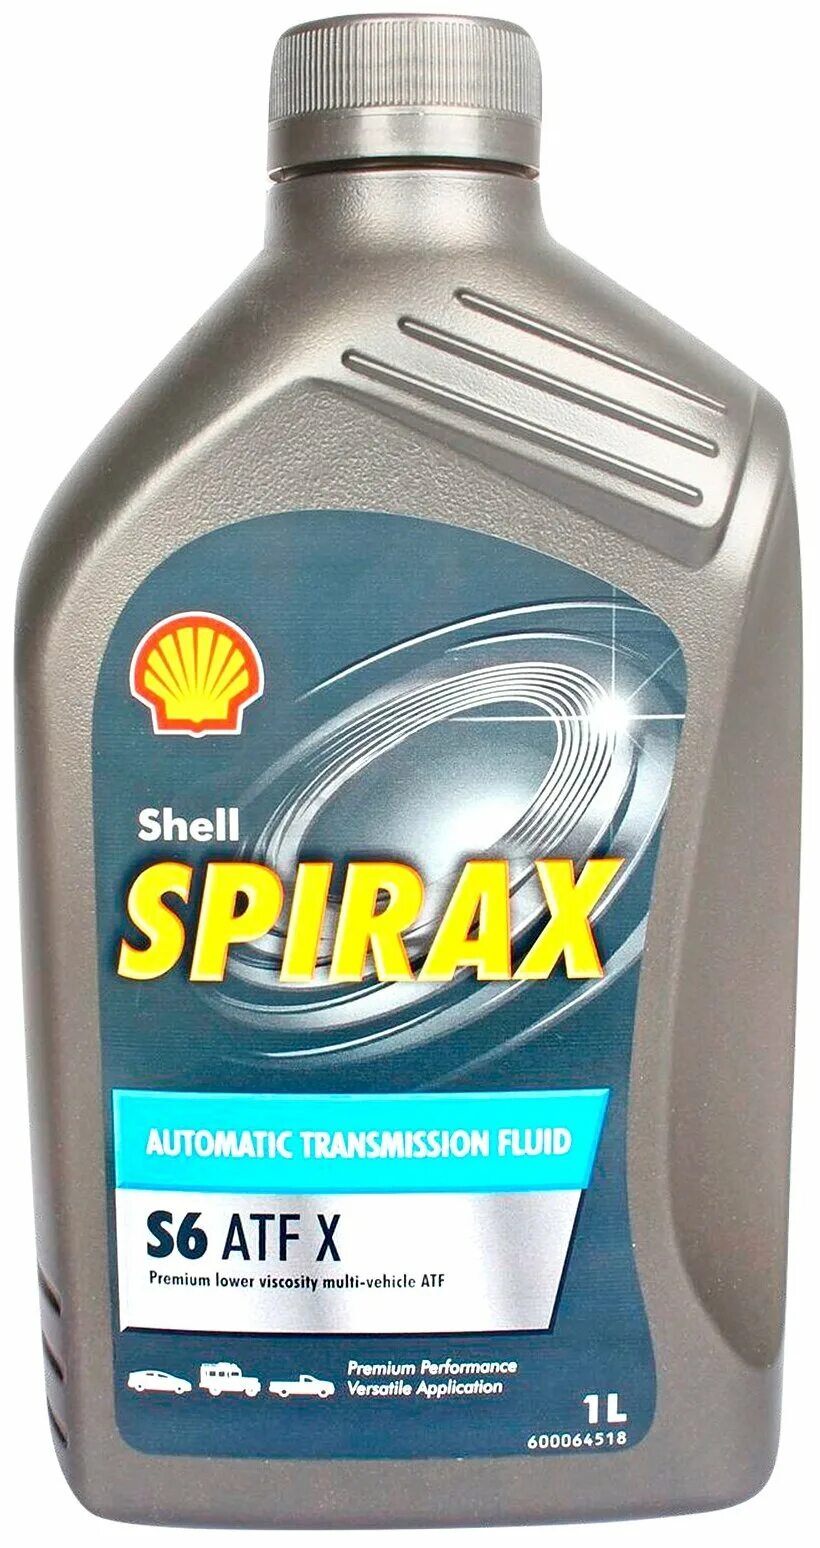 S6 atf x. Shell Spirax s6 ATF. Spirax s6 ATF X. Shell Spirax s6 ATF X. Трансмиссионное масло Shell Spirax s6 ATF X.